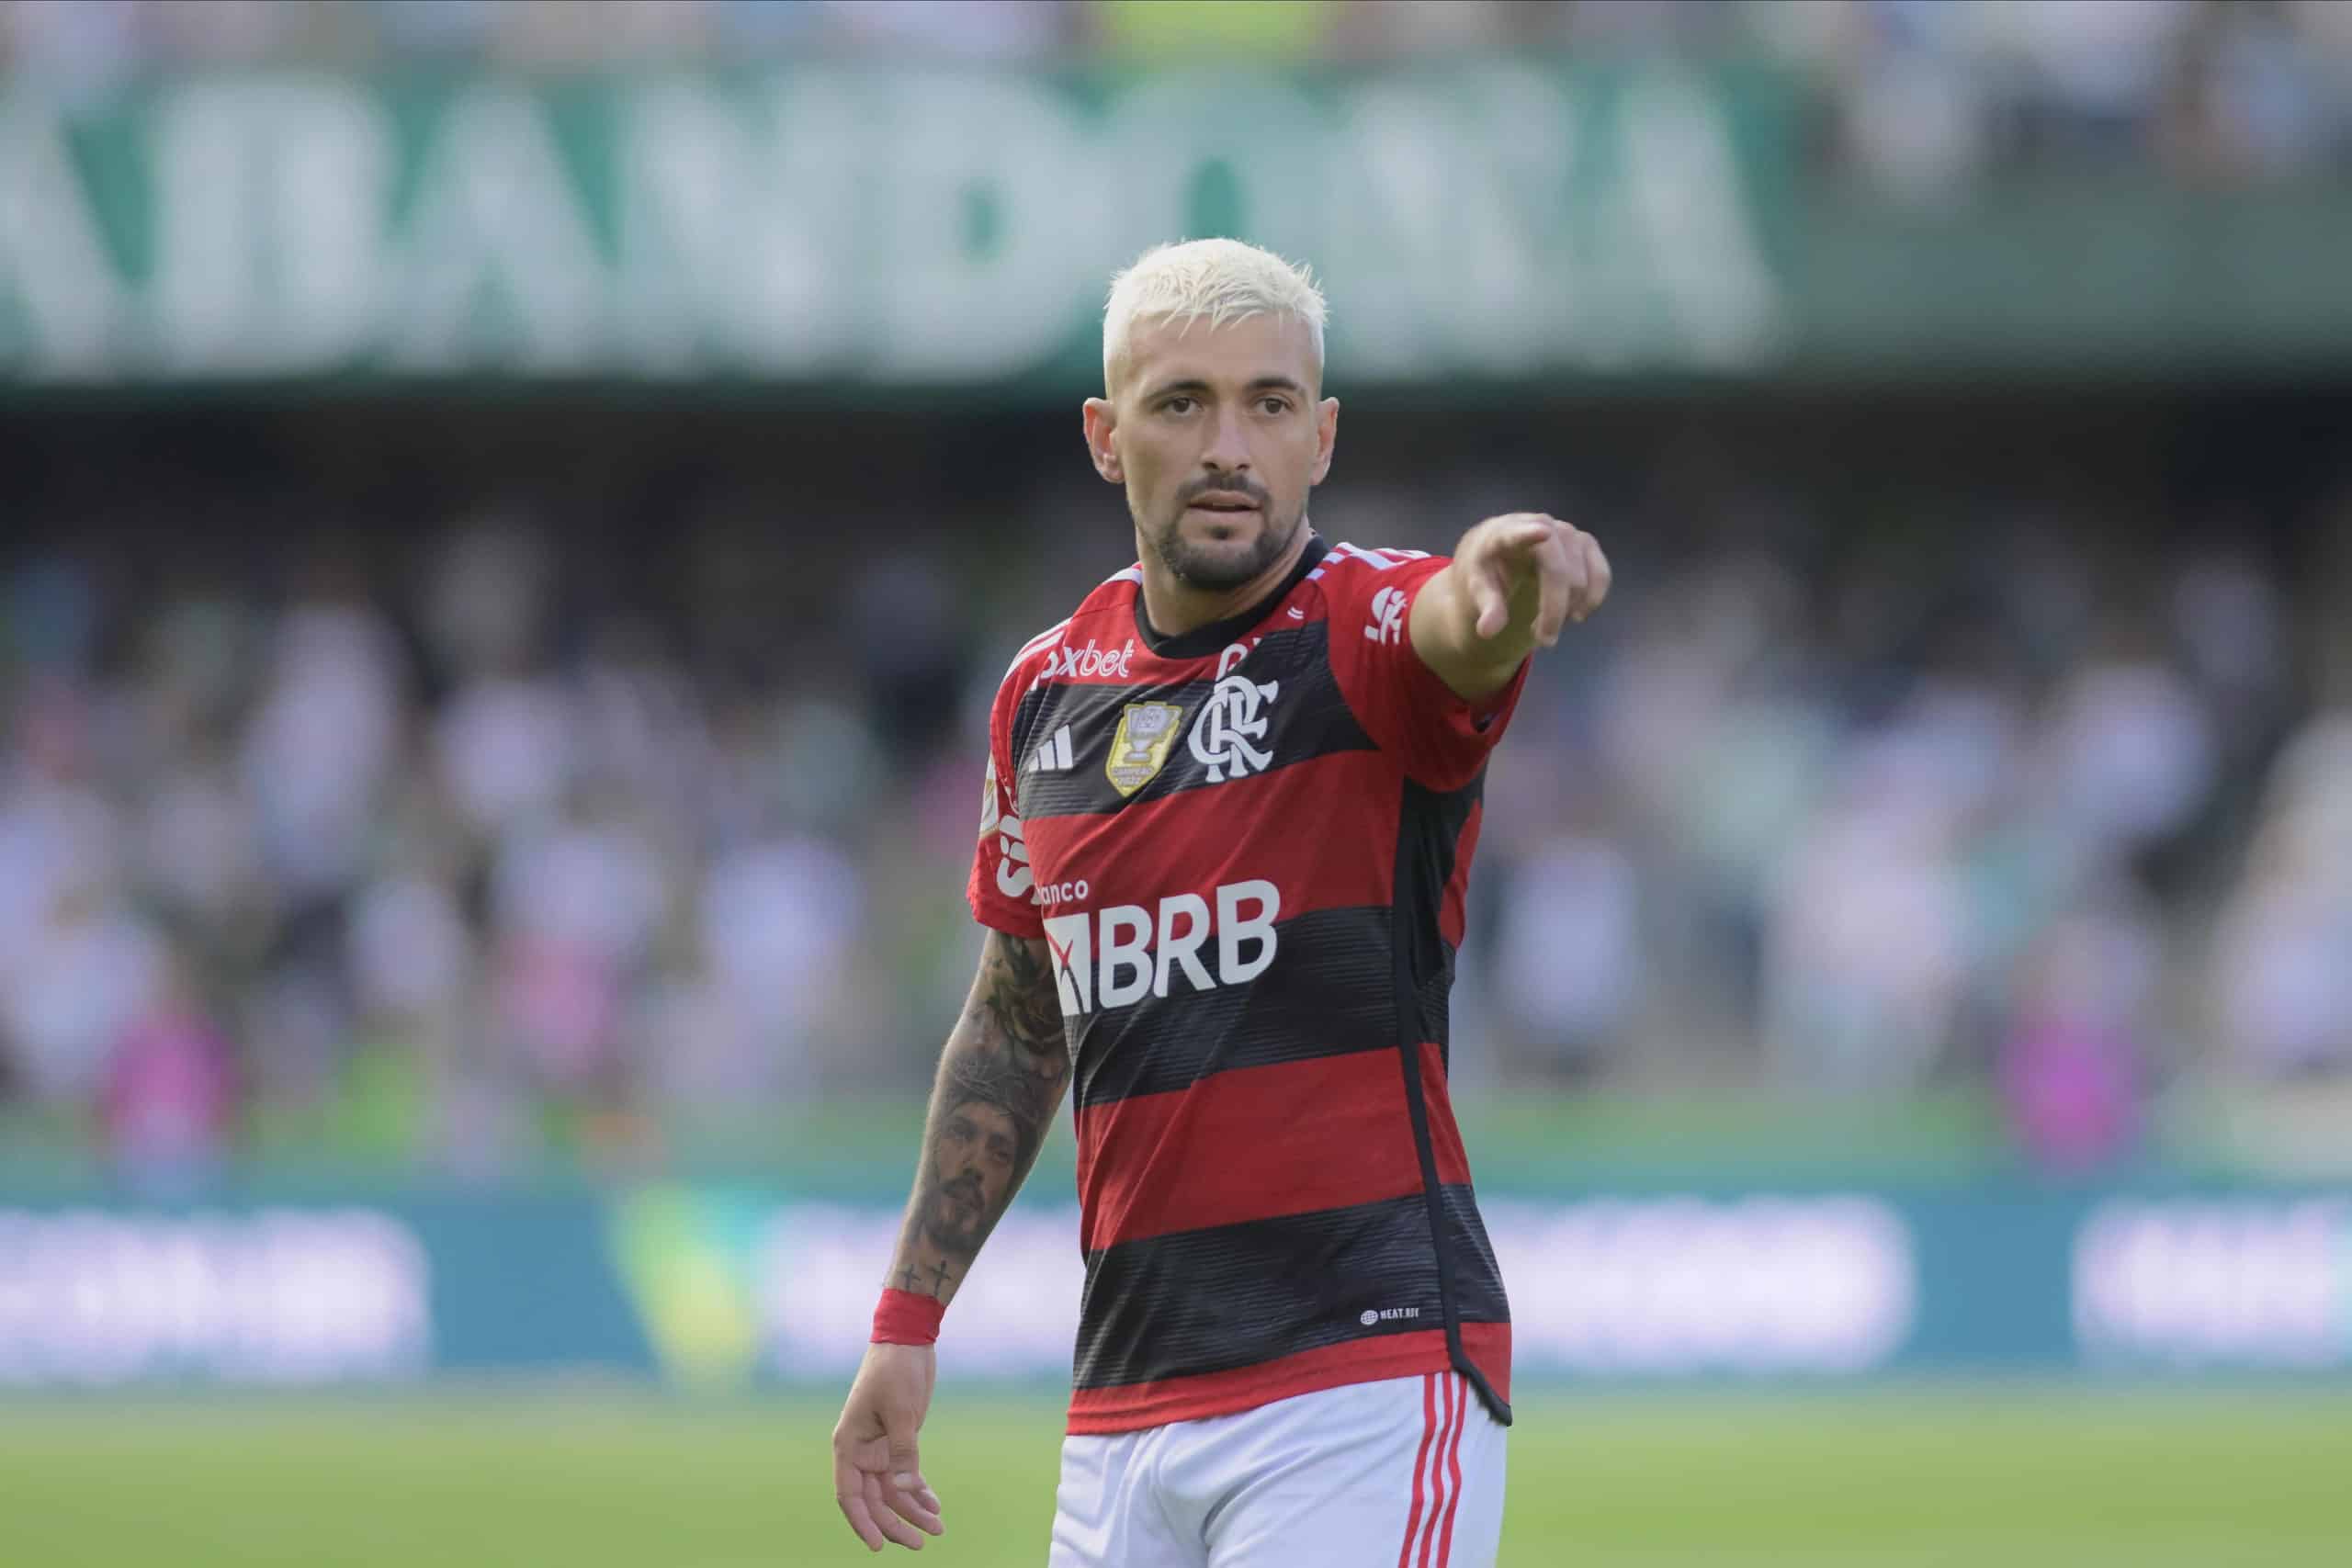 ‘Vão ter que vender a Bombonera’, diz dirigente do Flamengo sobre interesse do Boca em Arrascaeta